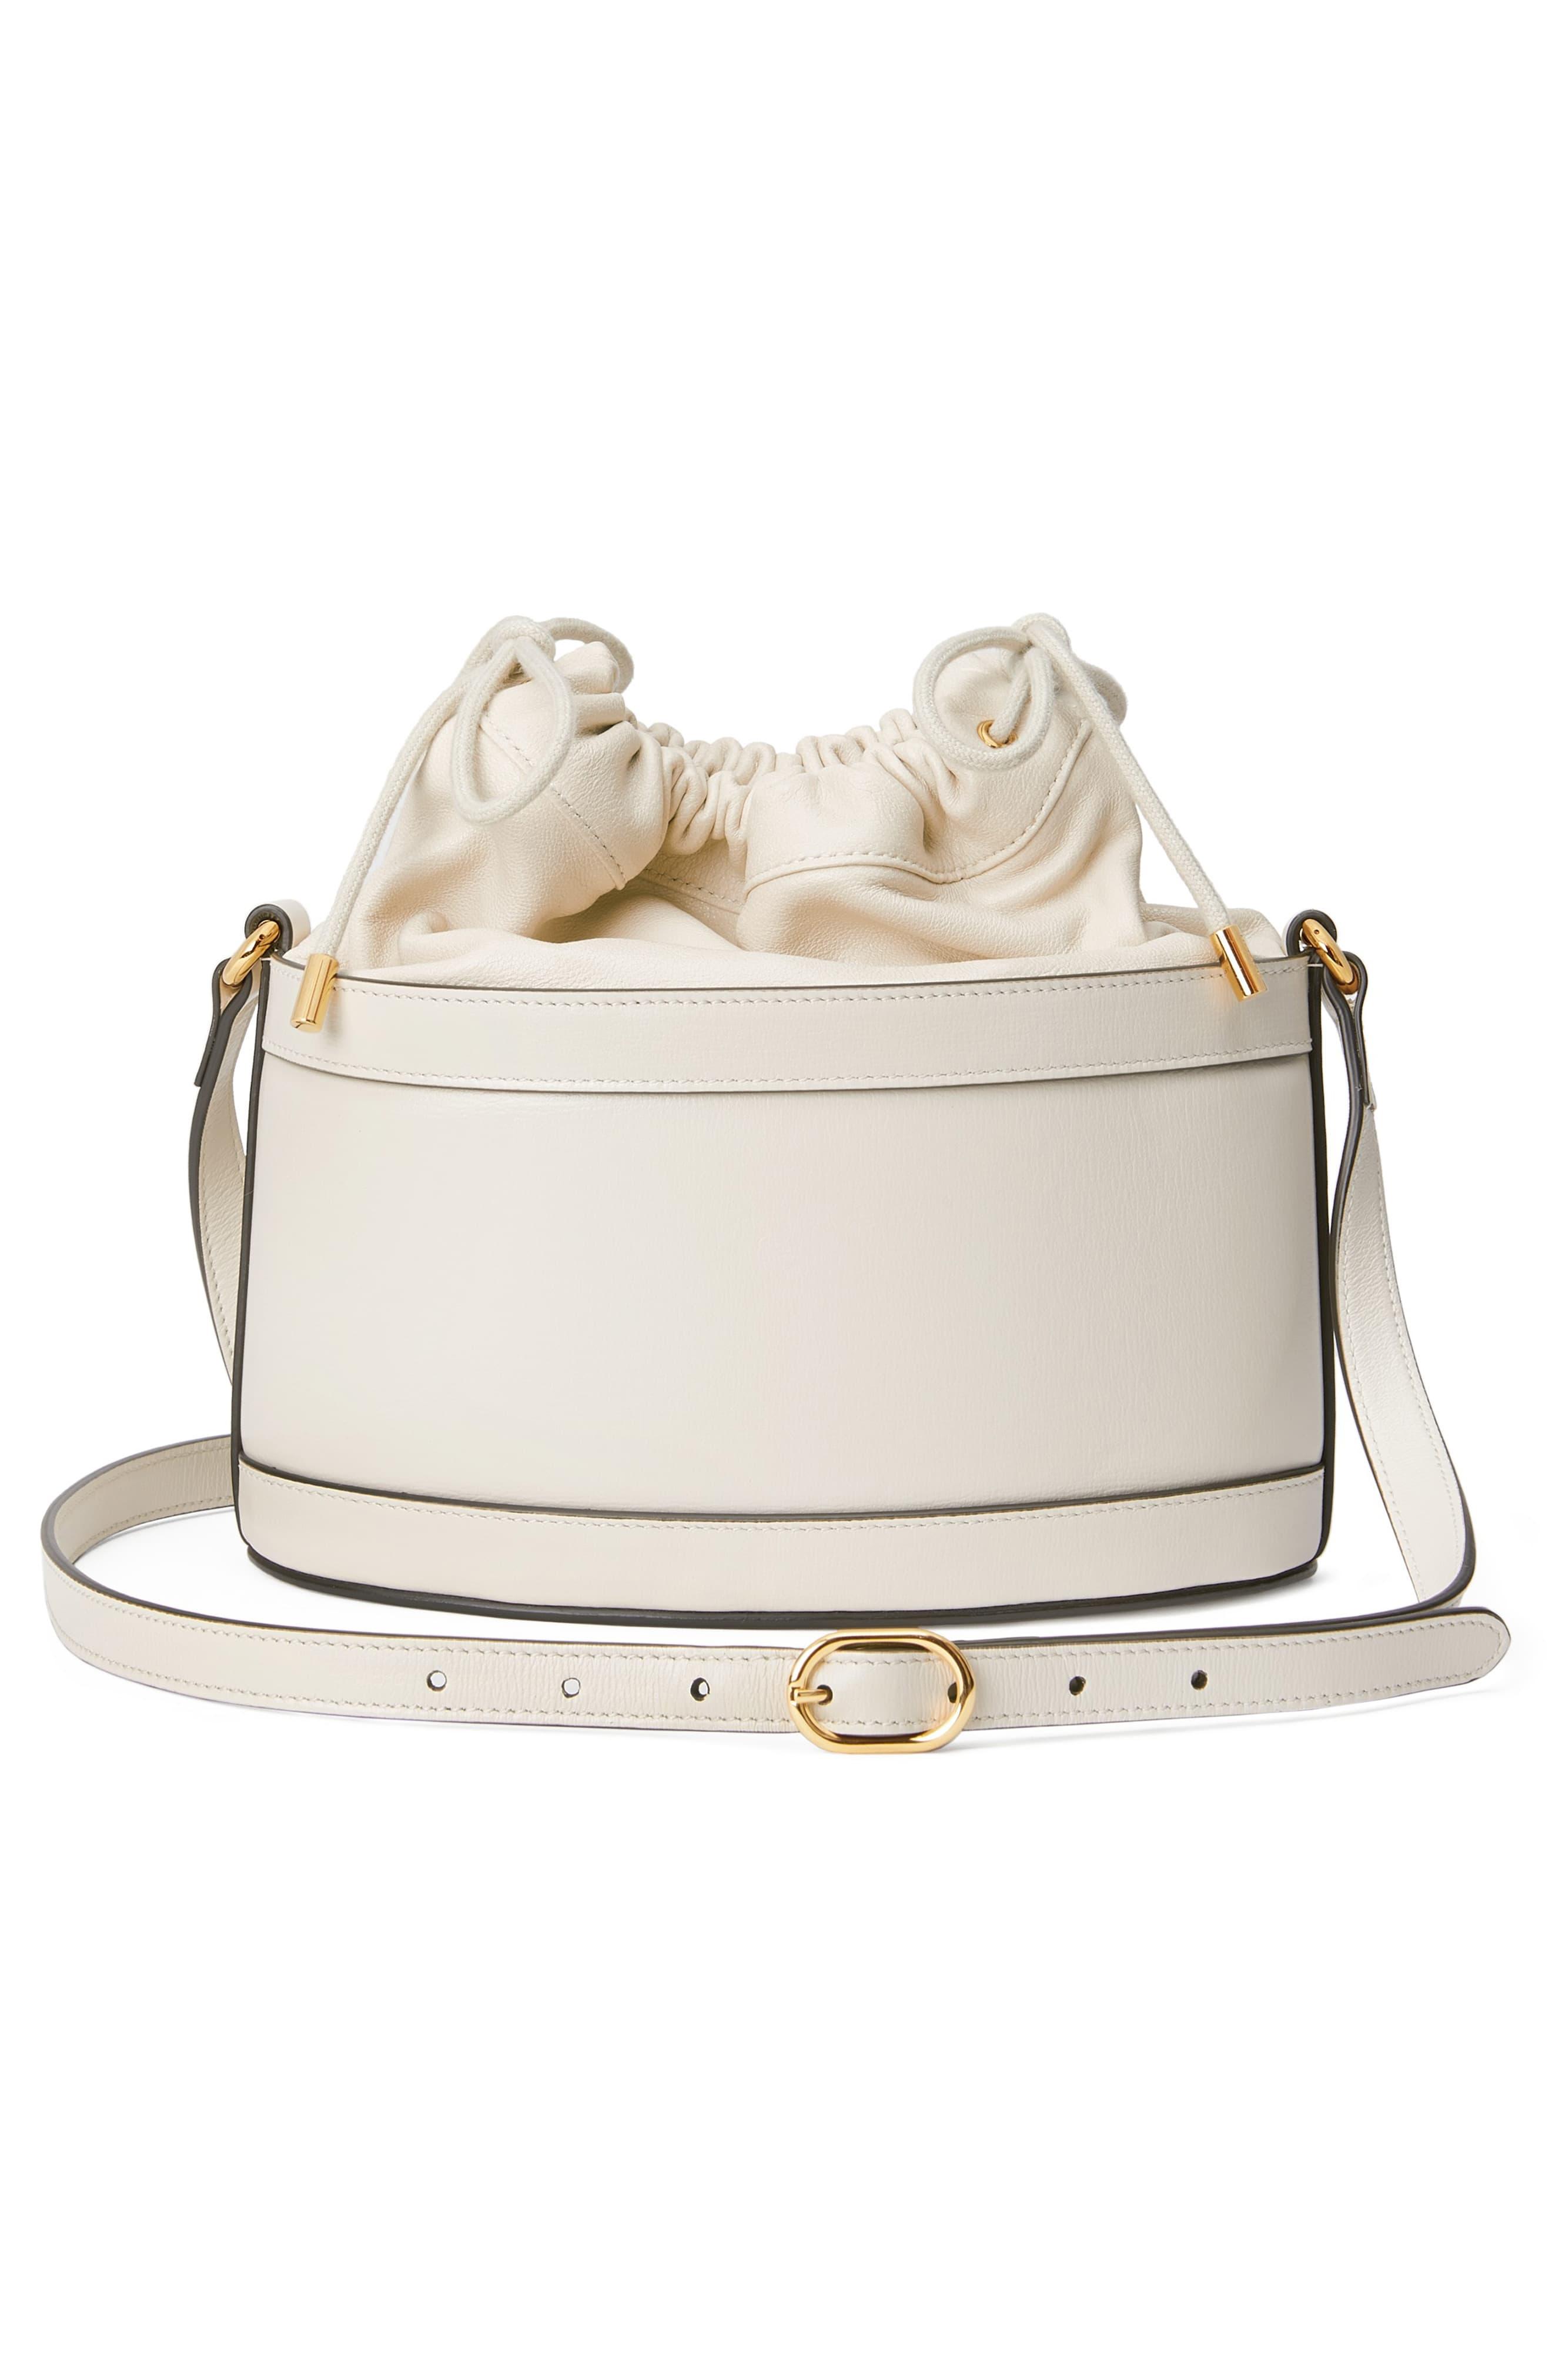 Gucci 1955 Horsebit White Leather Bucket Bag – Queen Bee of